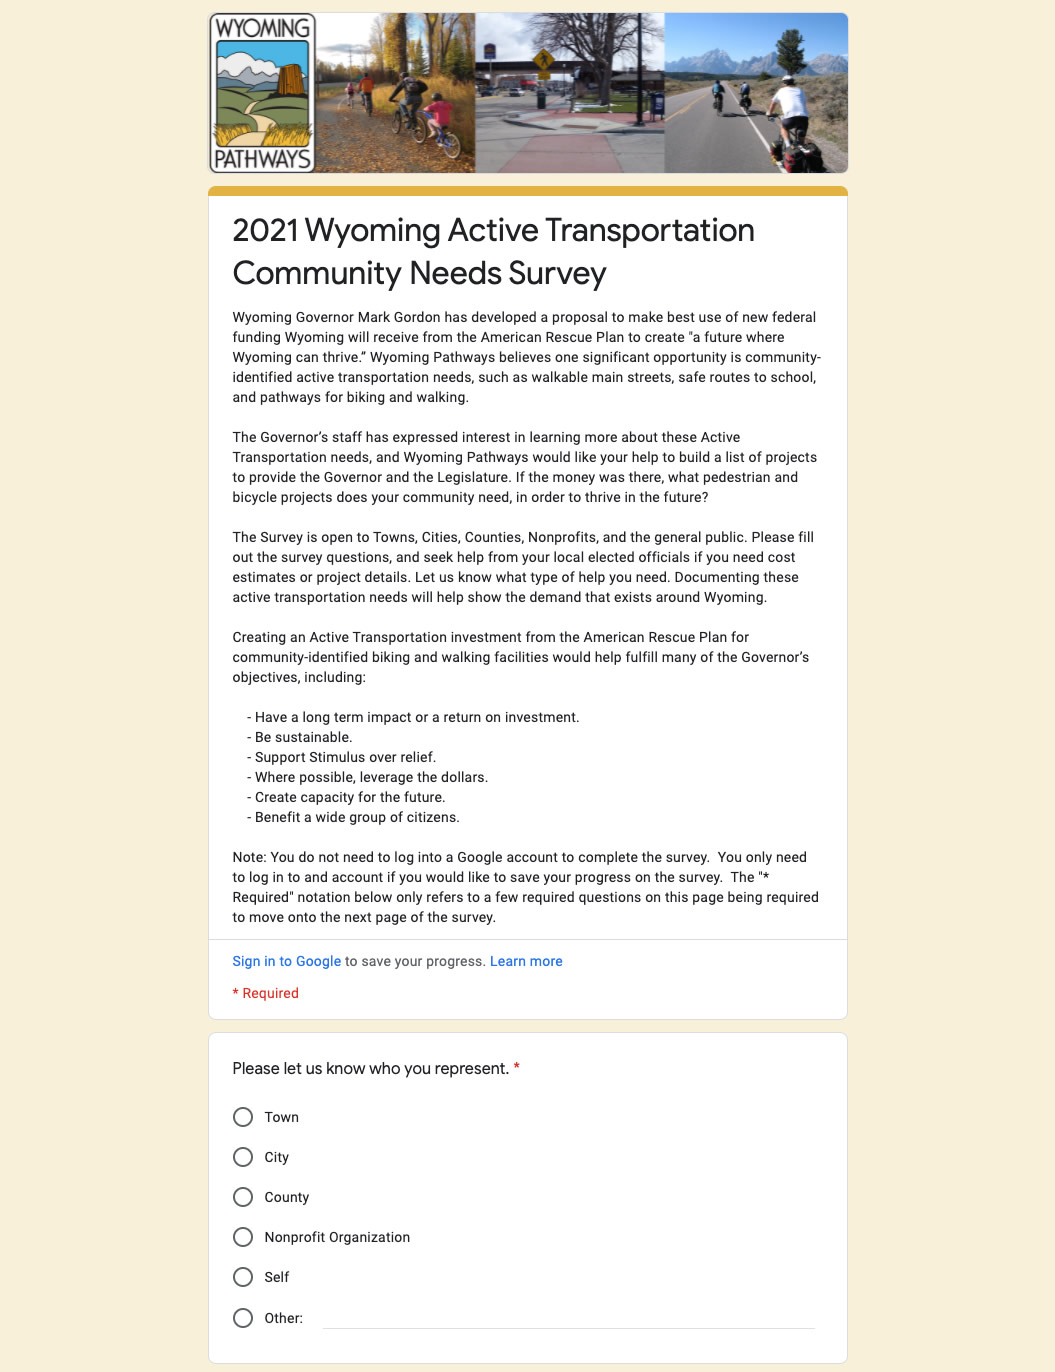 Wyoming Pathways' 2021 Wyoming Active Transportation Community Needs Survey